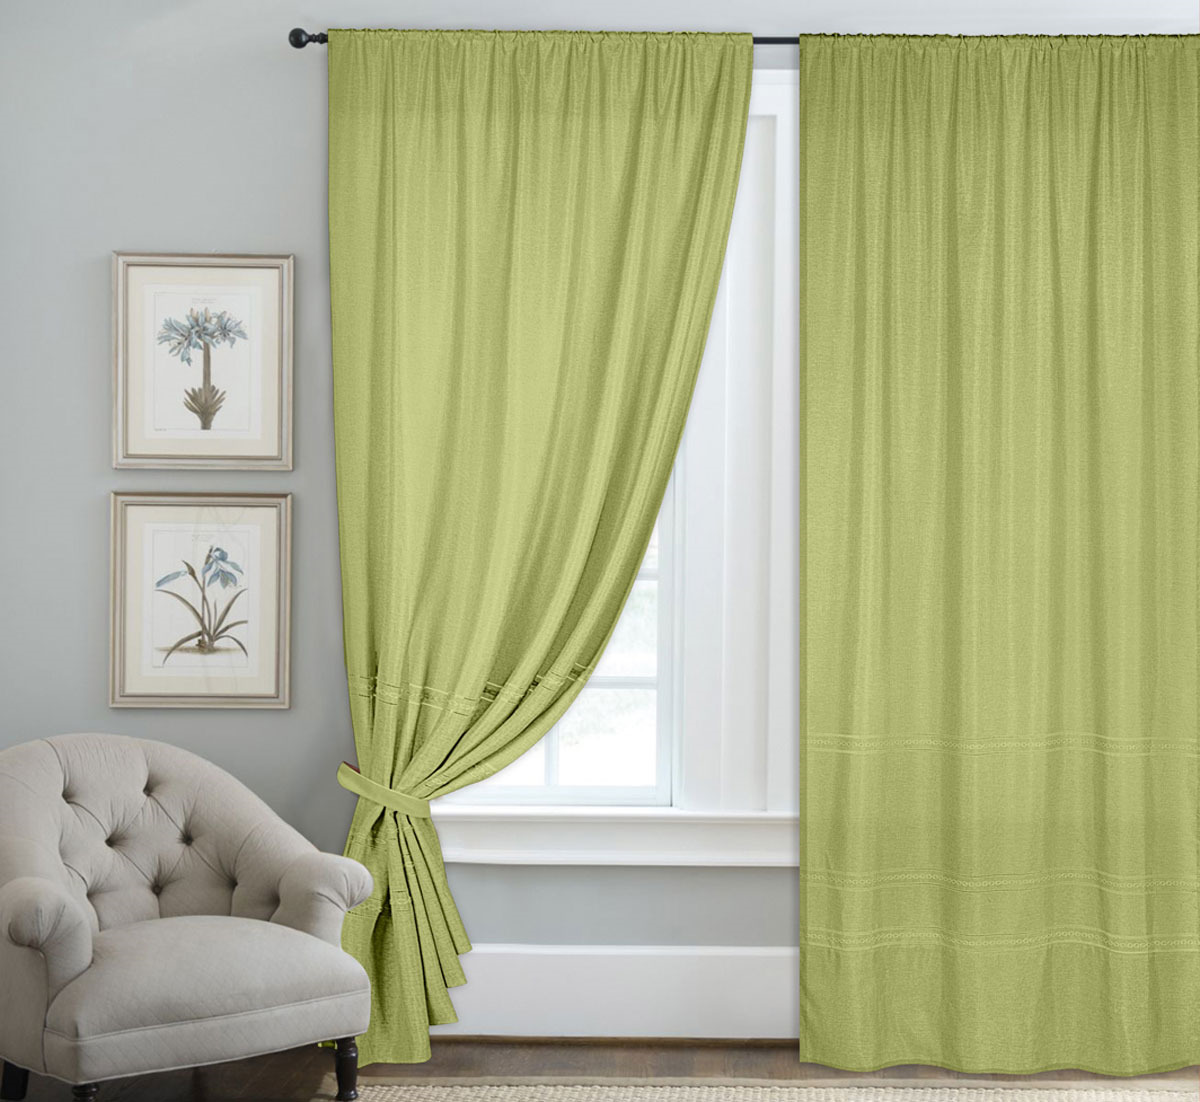 фото Комплект штор ТД Текстиль "Мережка", на ленте, цвет: светло-зеленый, высота 250 см. 6270